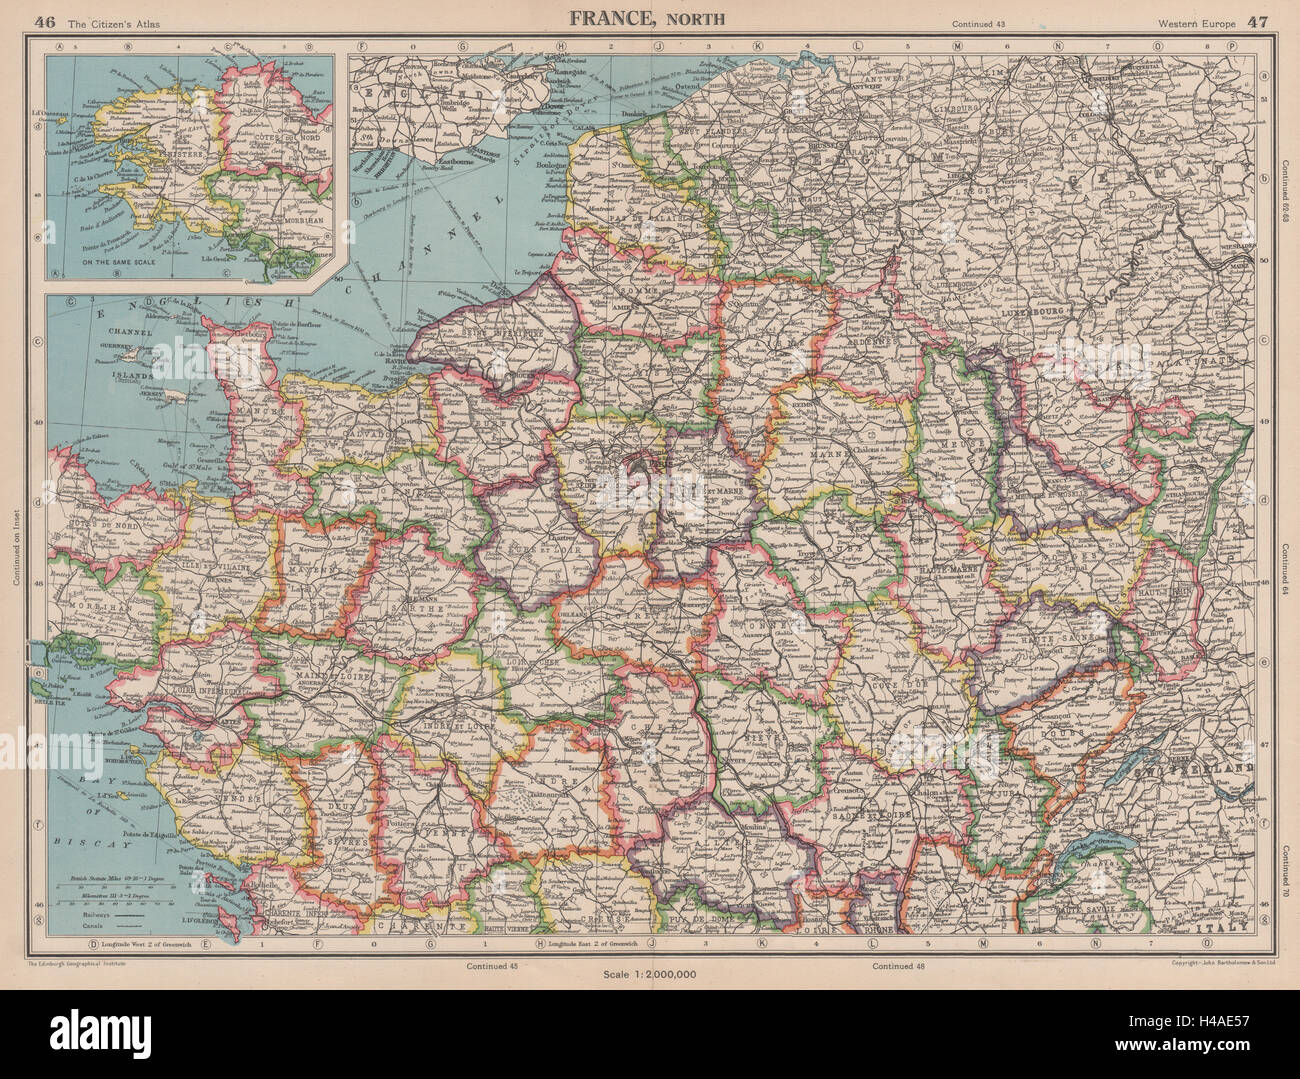 La France en départements du Nord. BARTHOLOMEW 1944 old vintage map plan graphique Banque D'Images